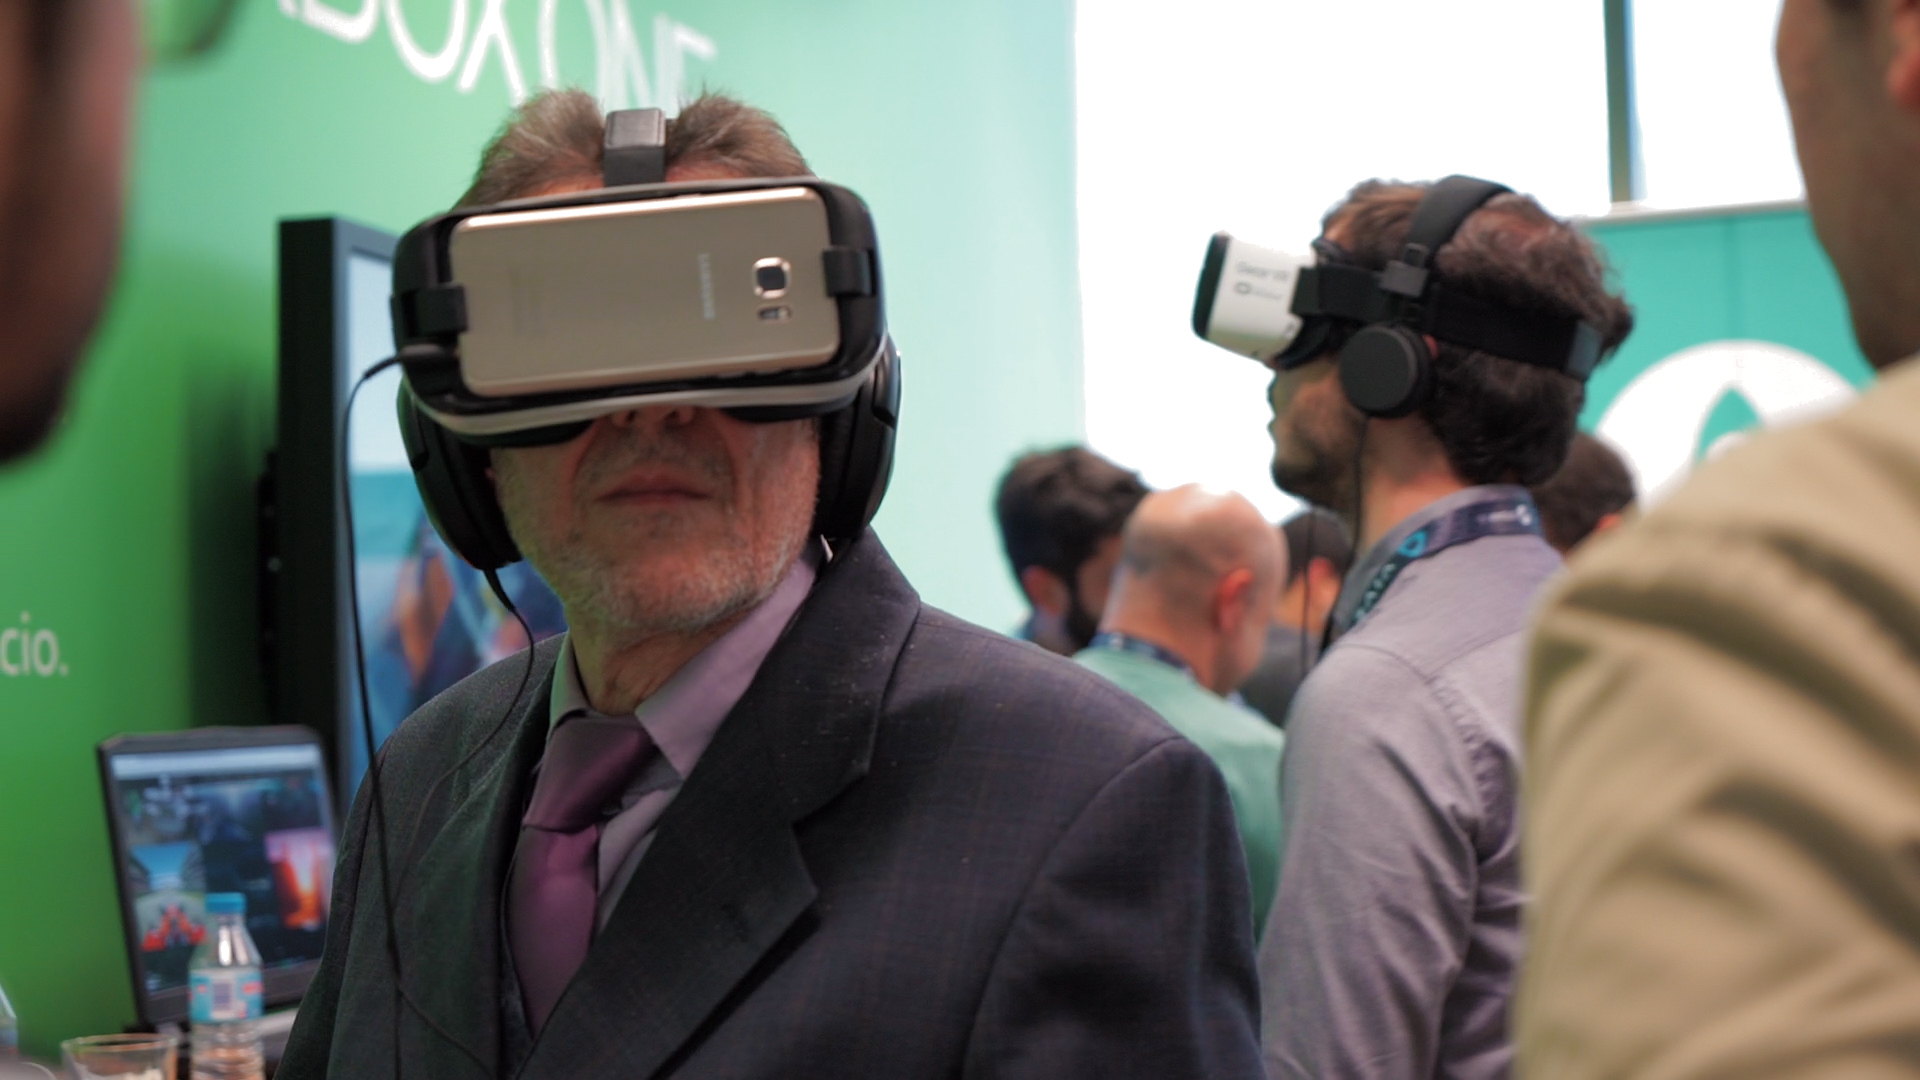 Realidade virtual: lazer e negócio